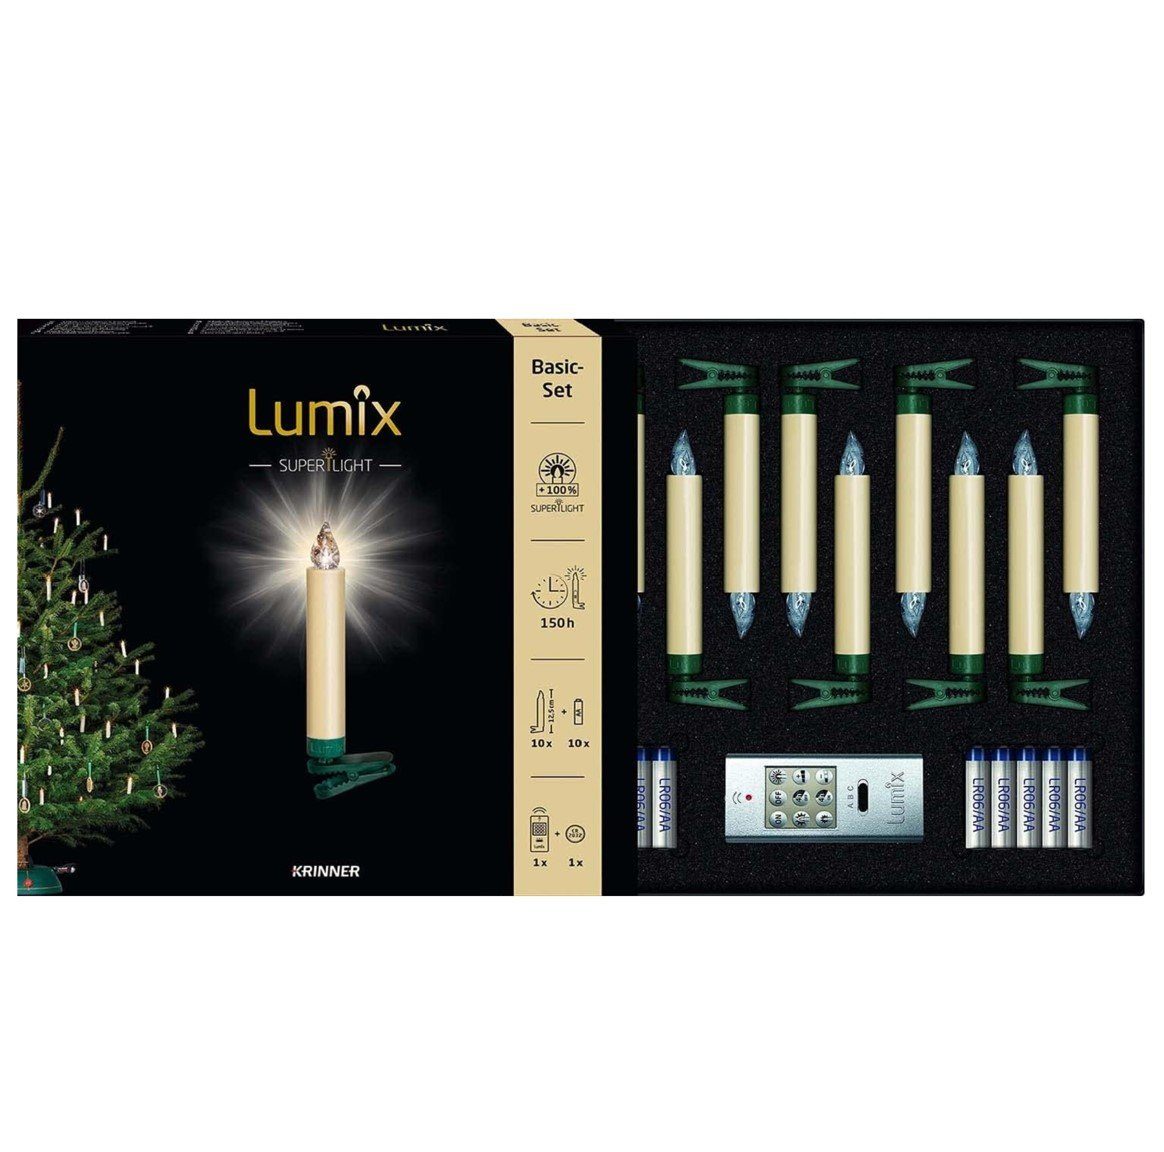 Lumix Superlight, Krinner Power kabellose Christba KRINNER Elfenbein LED 74422 Christbaumständer